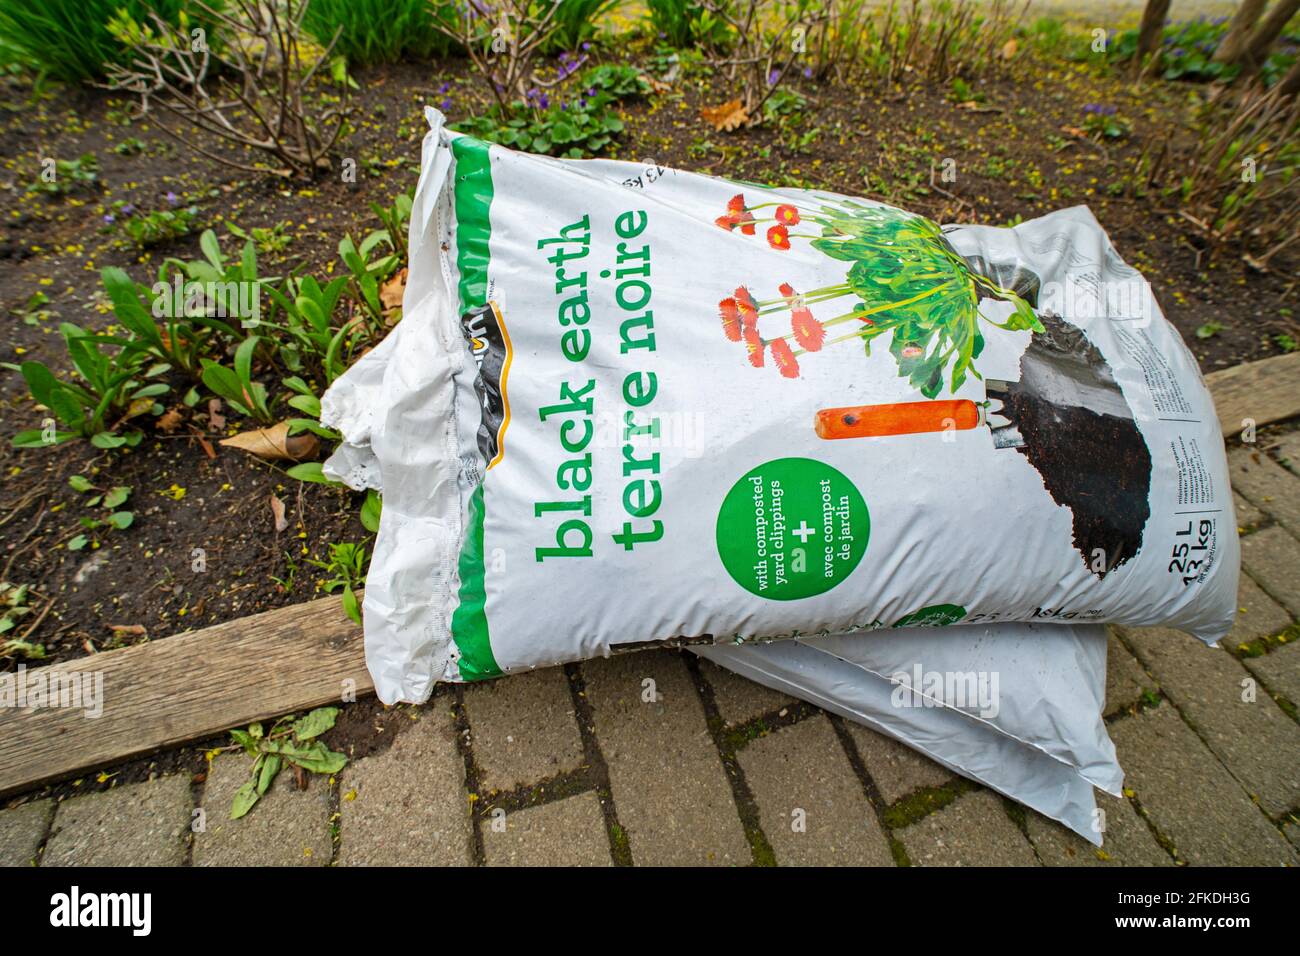 https://c8.alamy.com/comp/2FKDH3G/bags-of-gardening-soil-black-soil-soil-earth-for-garden-with-composted-yard-clippings-2FKDH3G.jpg